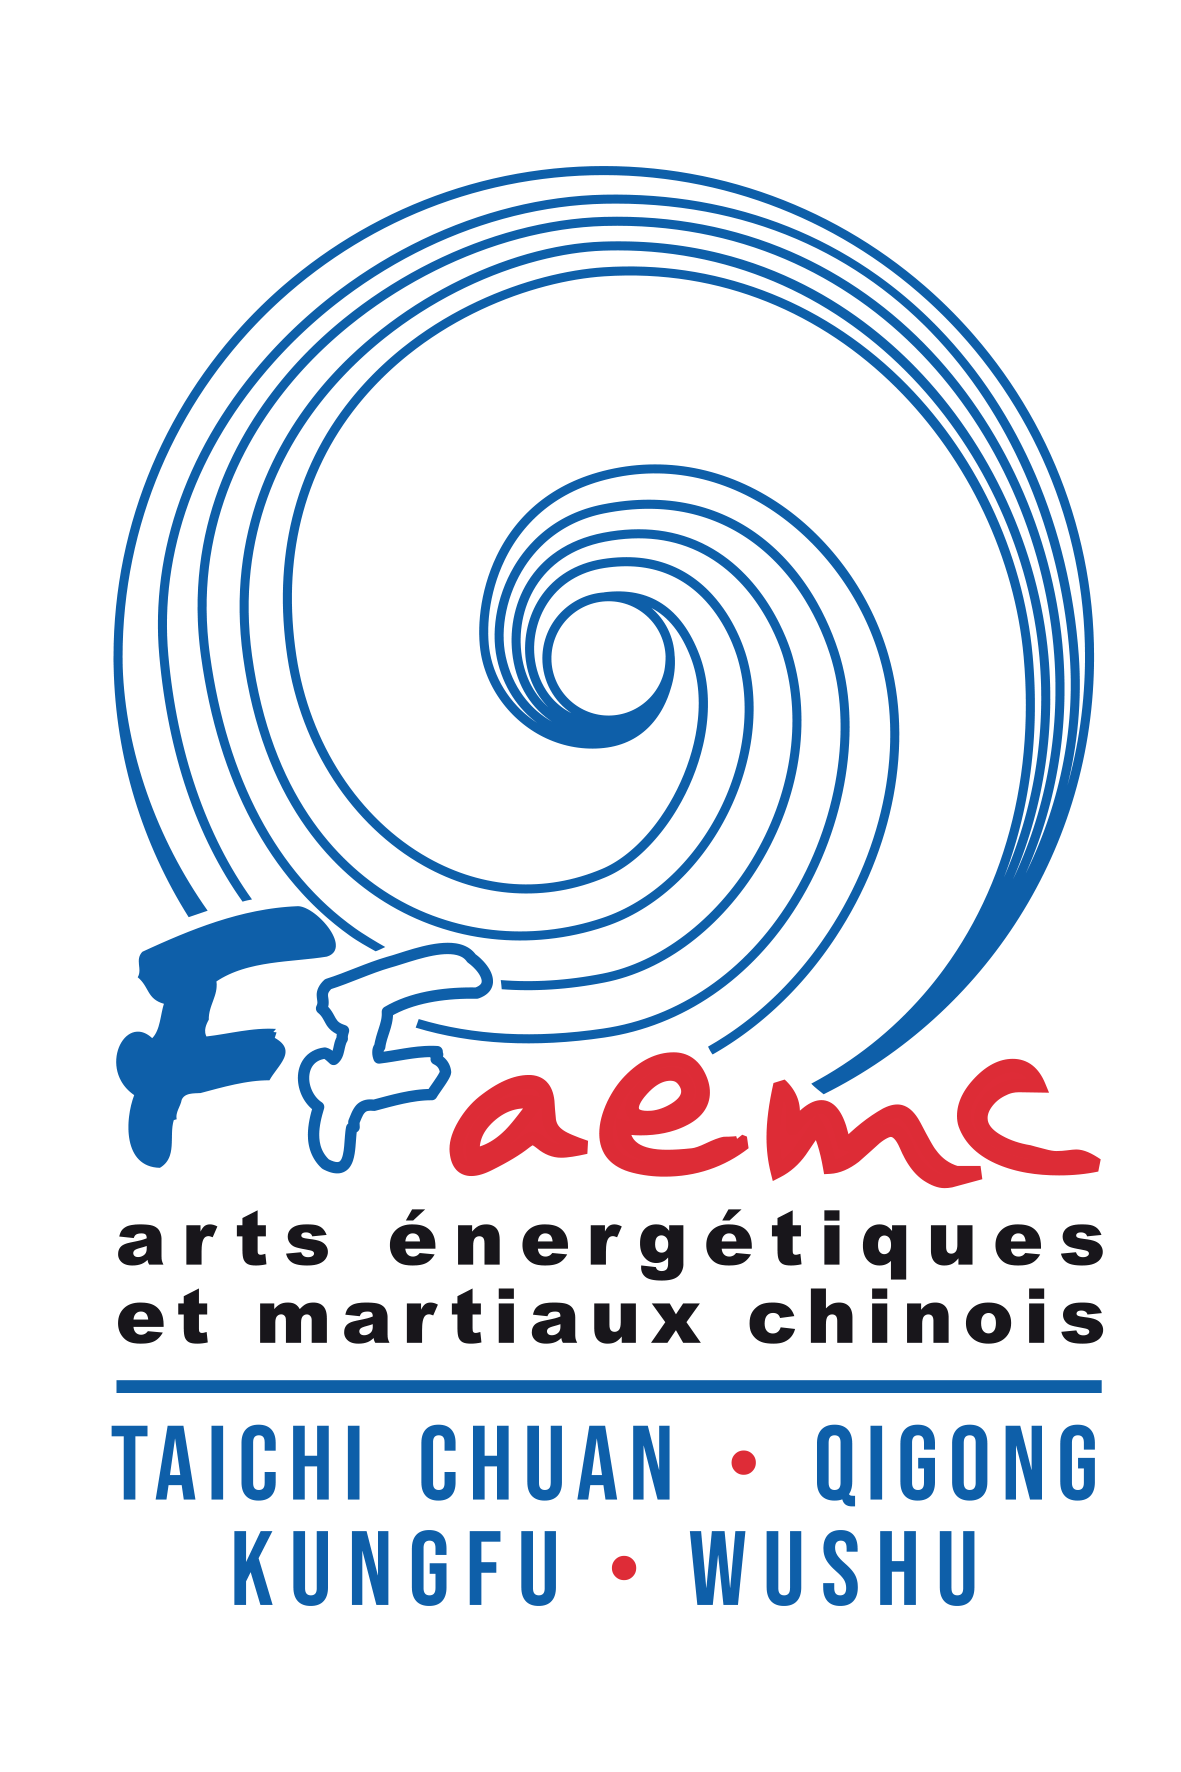 Le Cercle Wushu 69 est affilié à la Fédération Française d'Arts Énergétiques et Martiaux Chinois